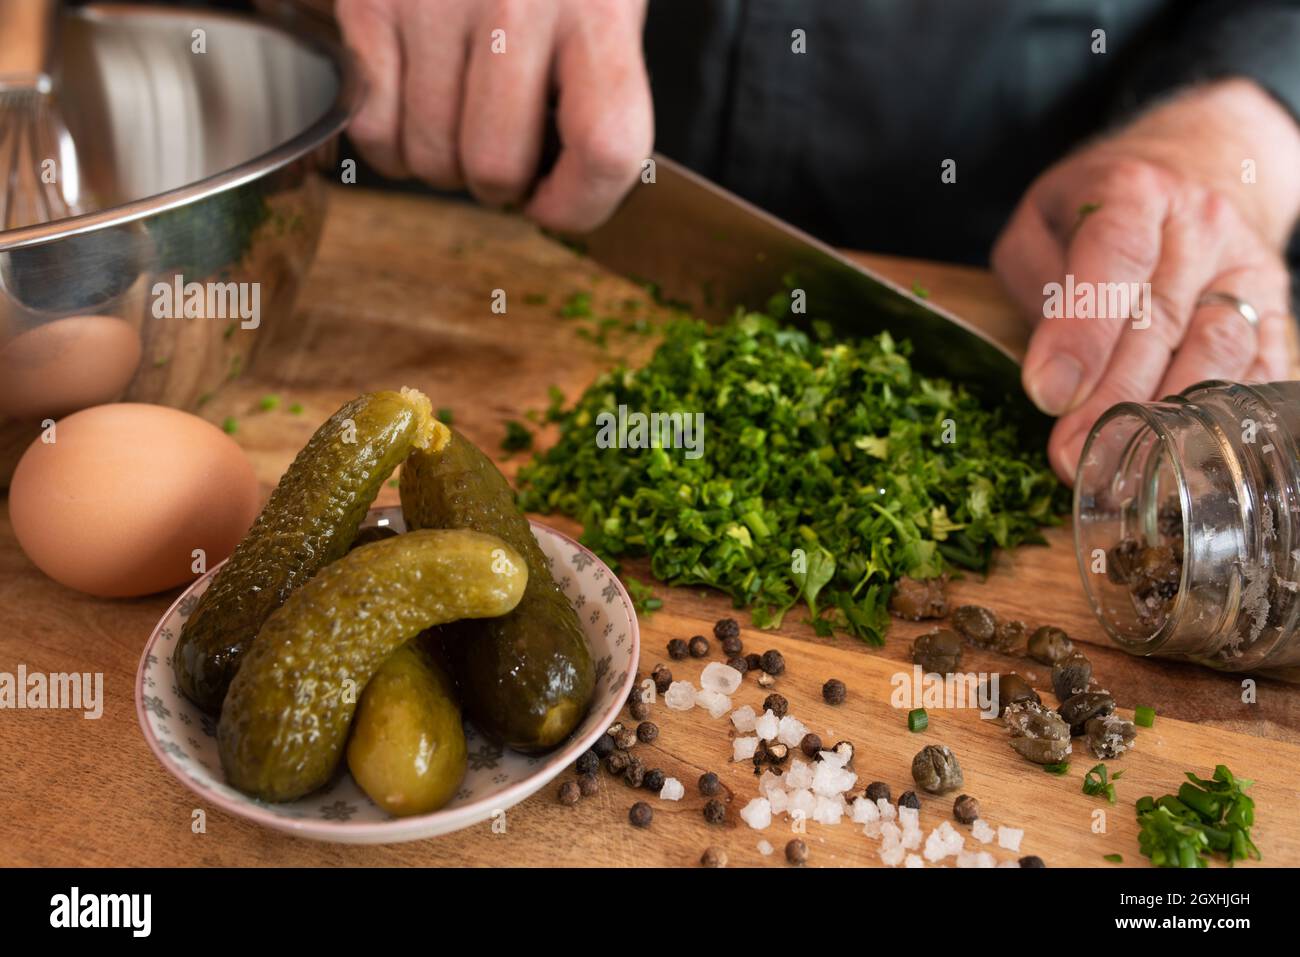 Préparer une sauce gribiche pour les asperges vertes. Préparez des ingrédients frais pour un plat d'accompagnement savoureux. Gastronomie et style de vie. Gros plan W Banque D'Images